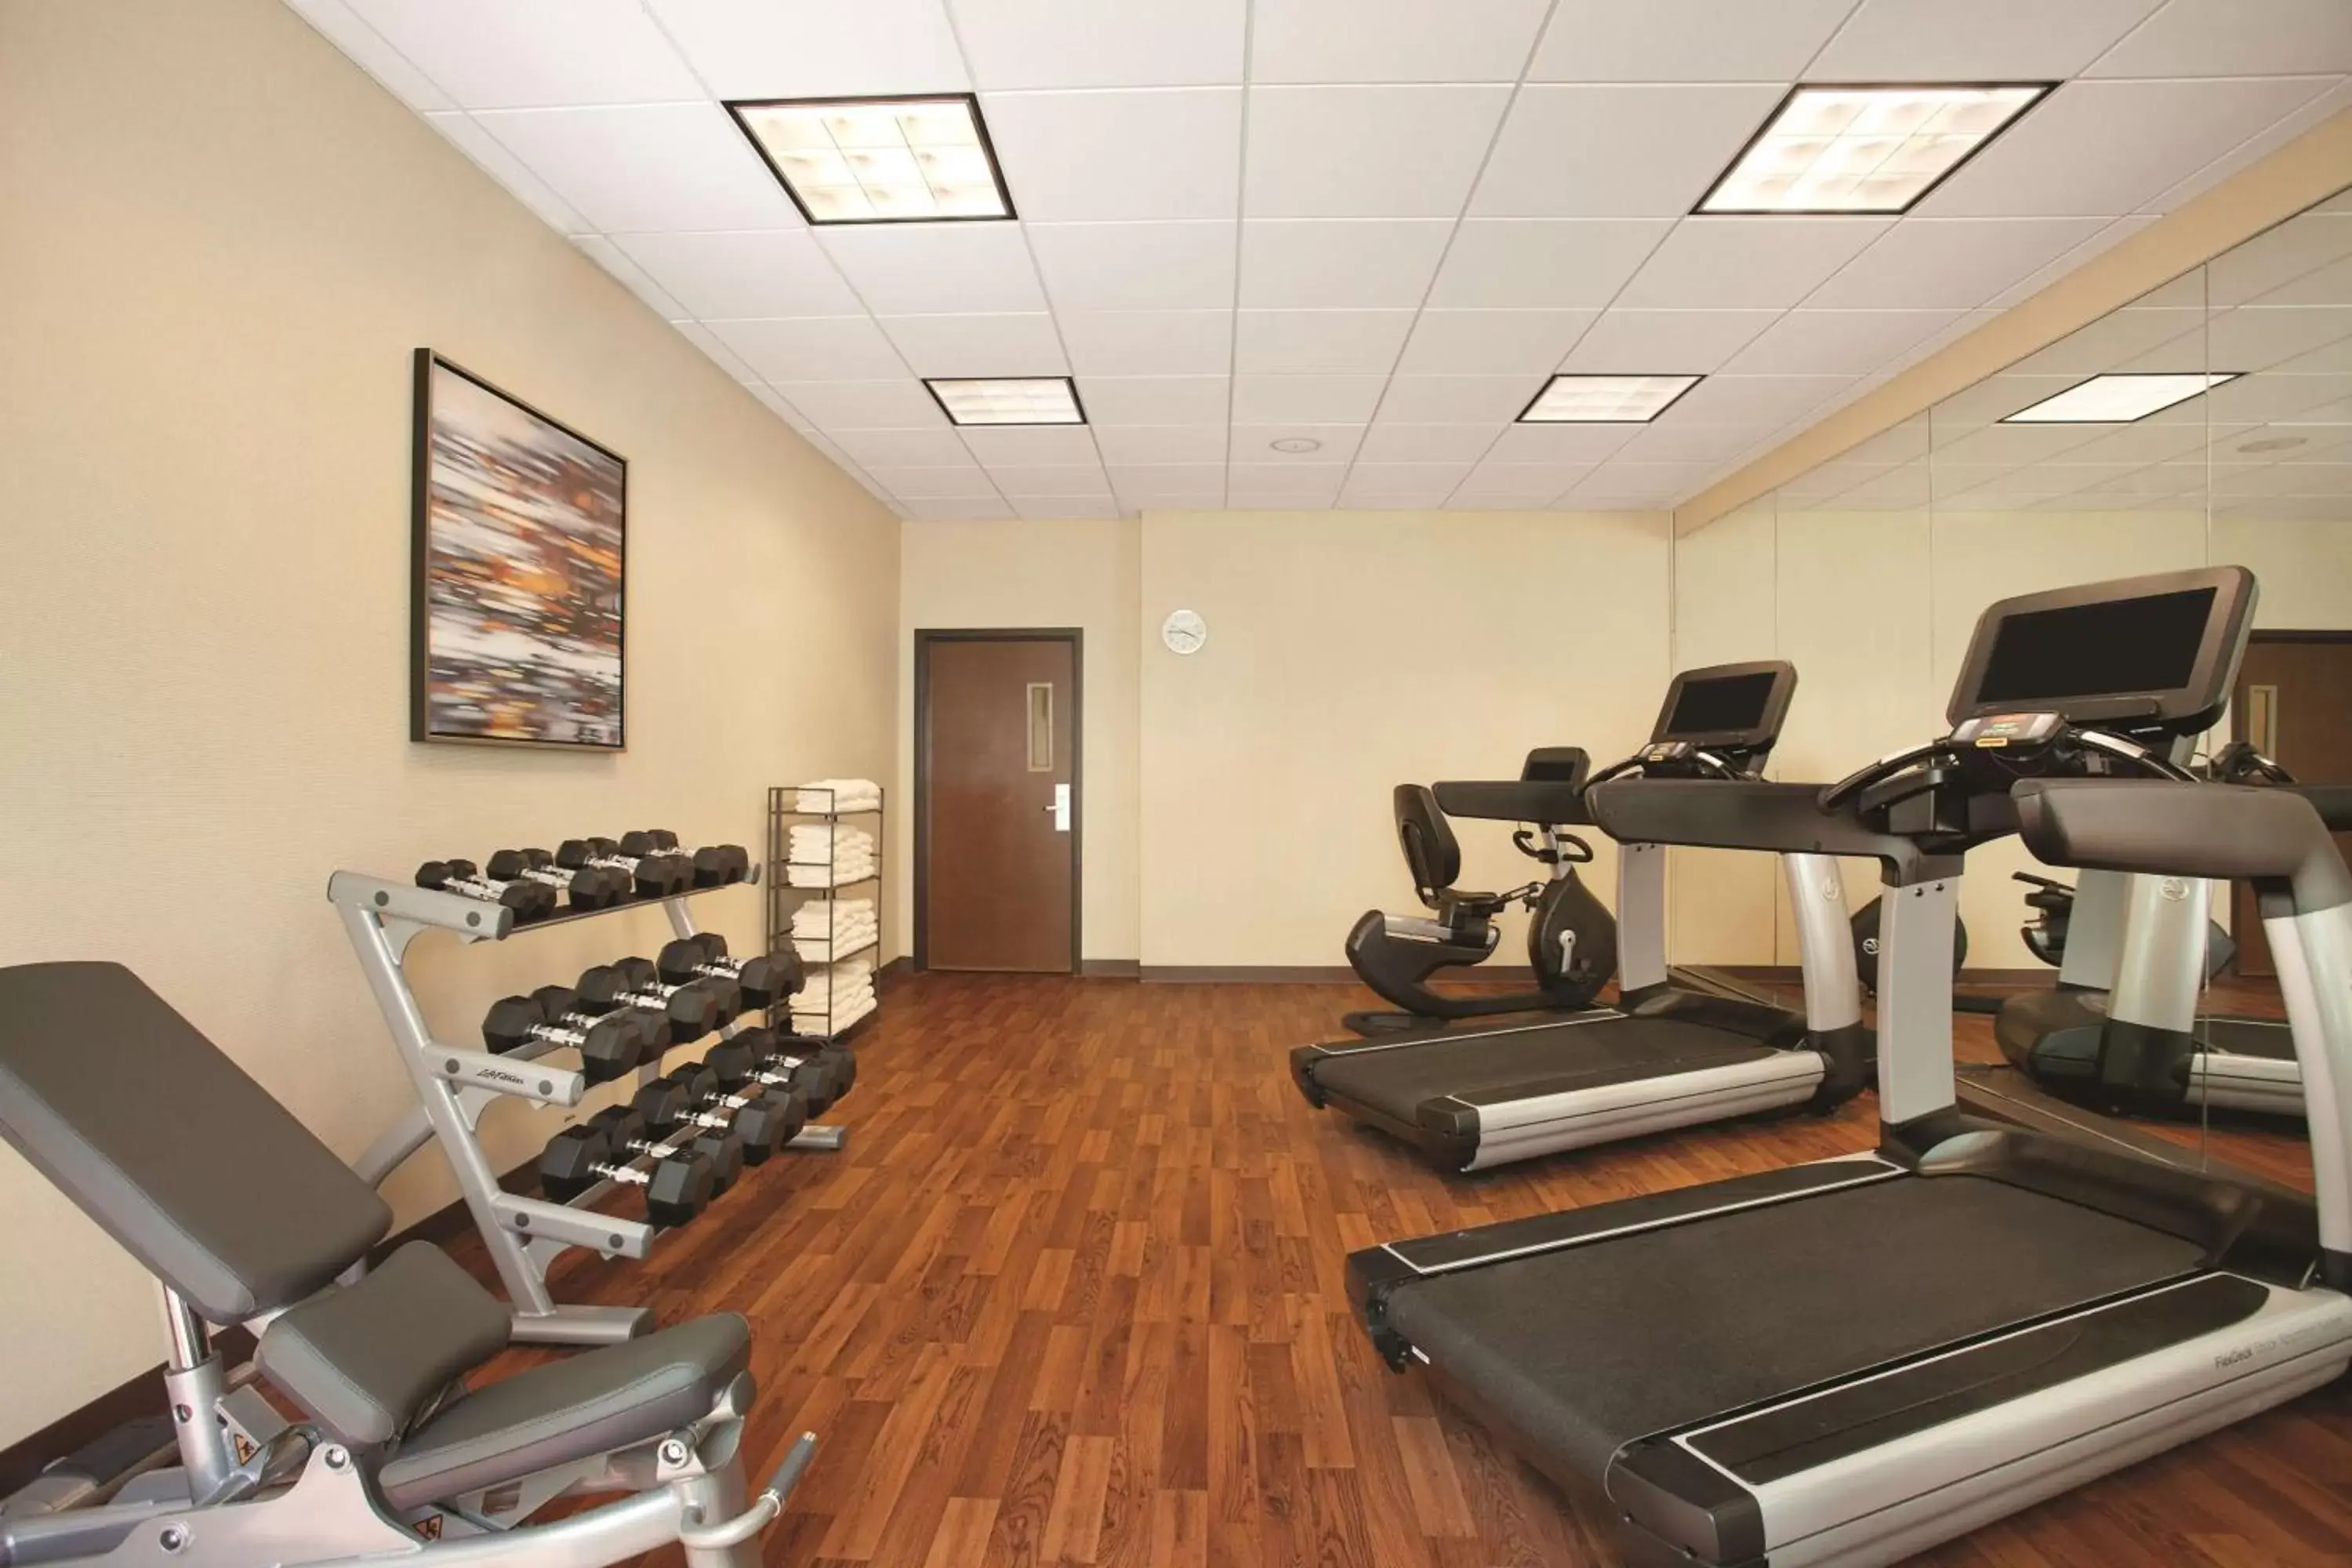 Fitness centre/facilities, Fitness Center/Facilities in Hyatt Place Denver Tech Center